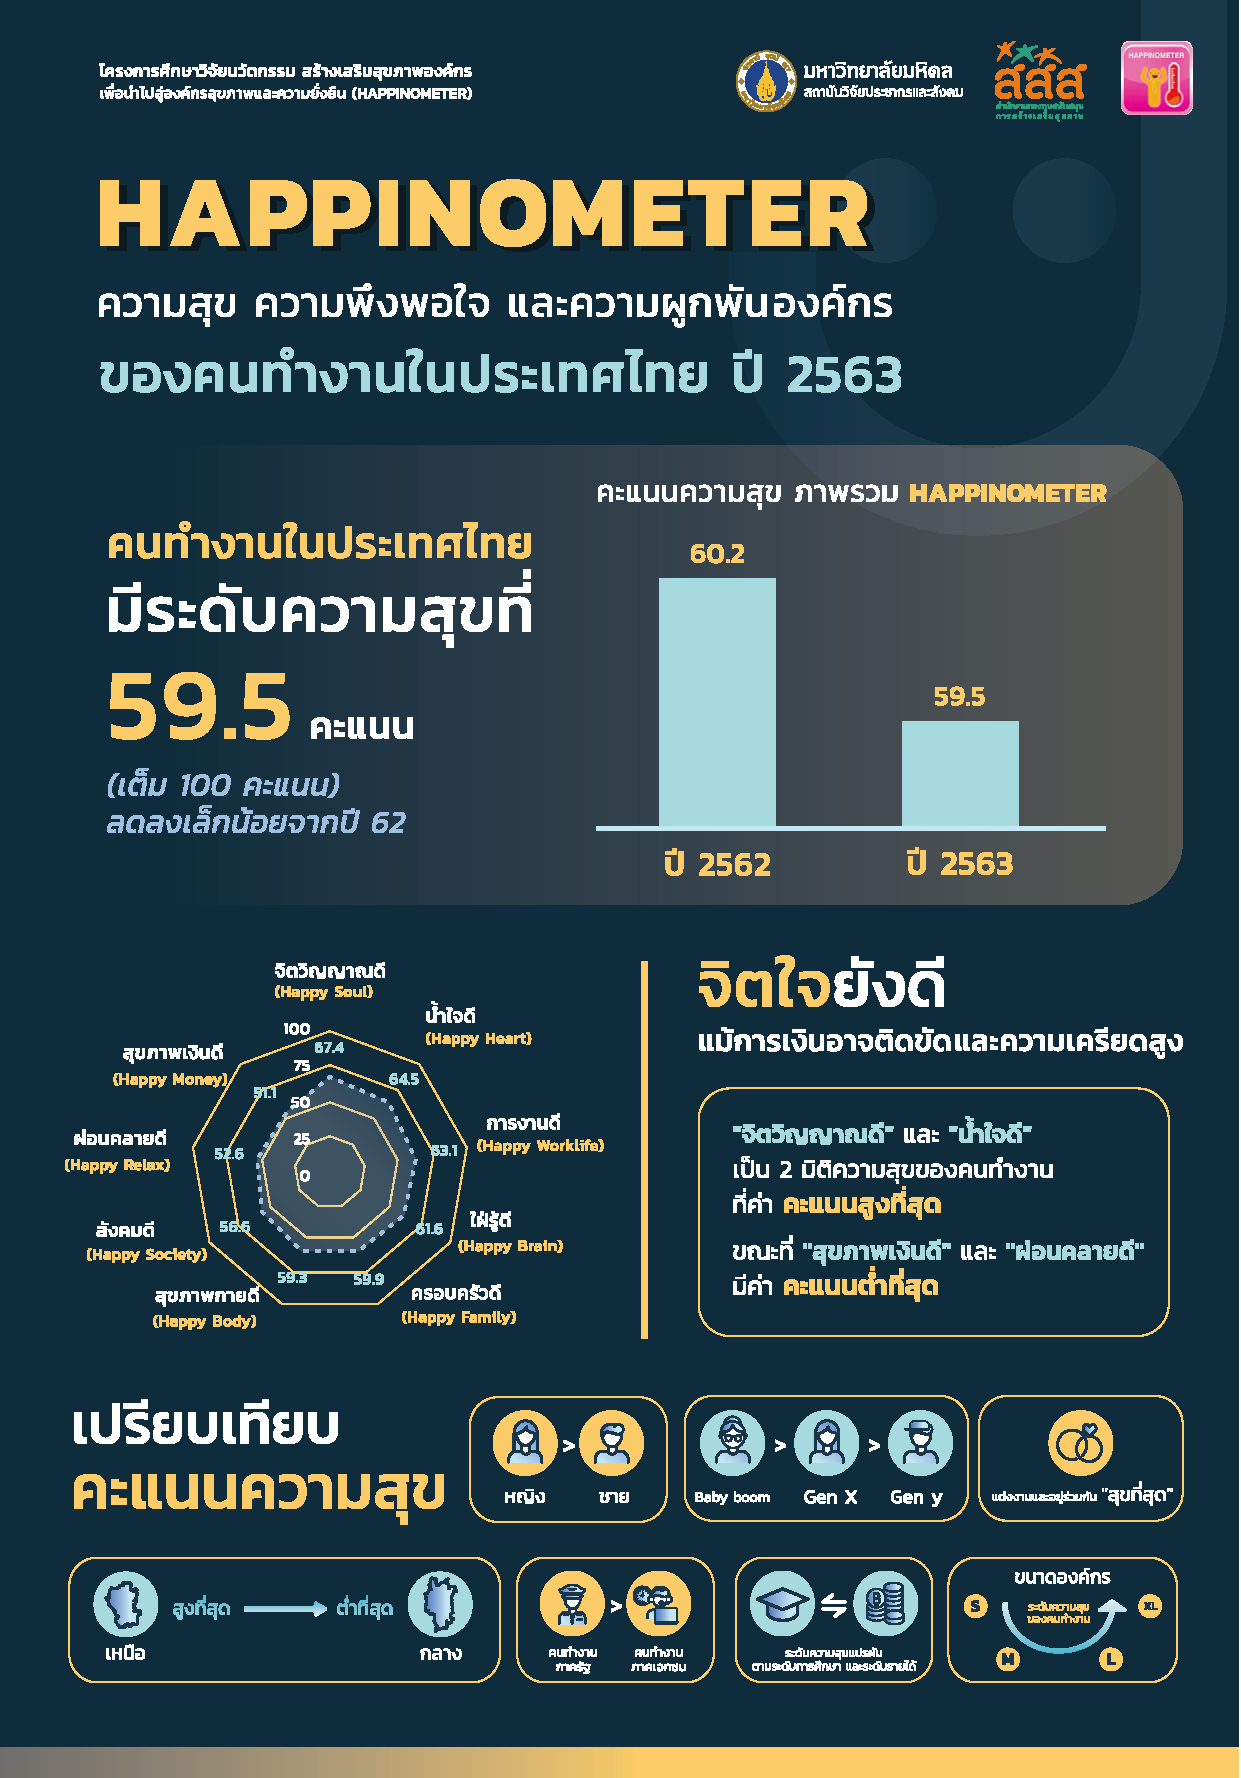 ผลการสำรวจ ความสุข ความพึงพอใจ และความผูกพันองค์กร ของคนทำงานในประเทศไทย ปี 2563